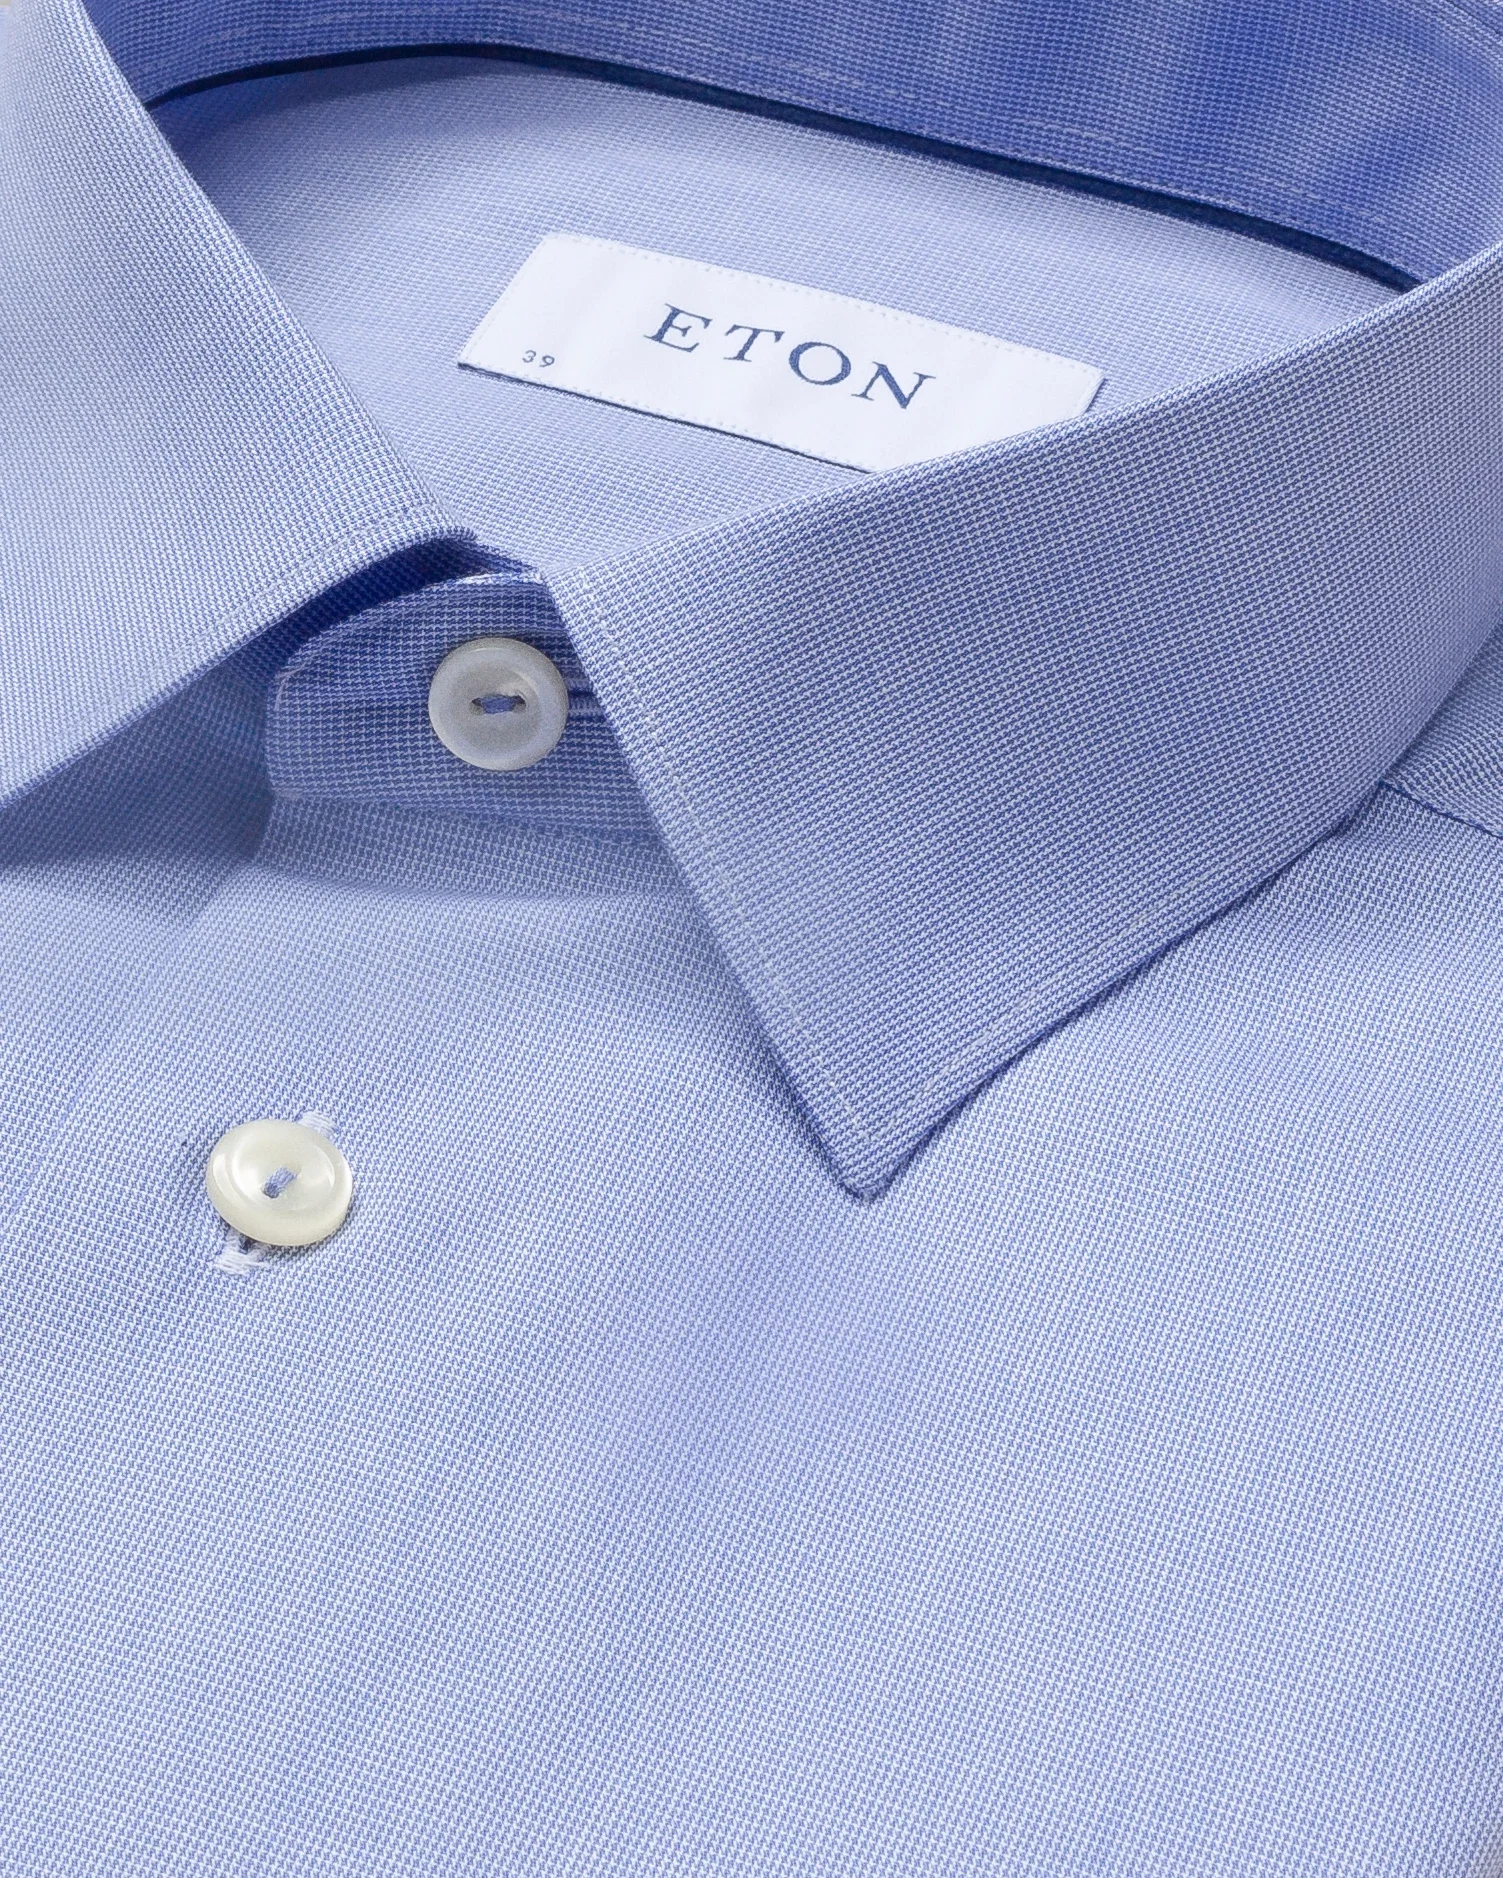 Eton - pastel blue shirt navy details pointed